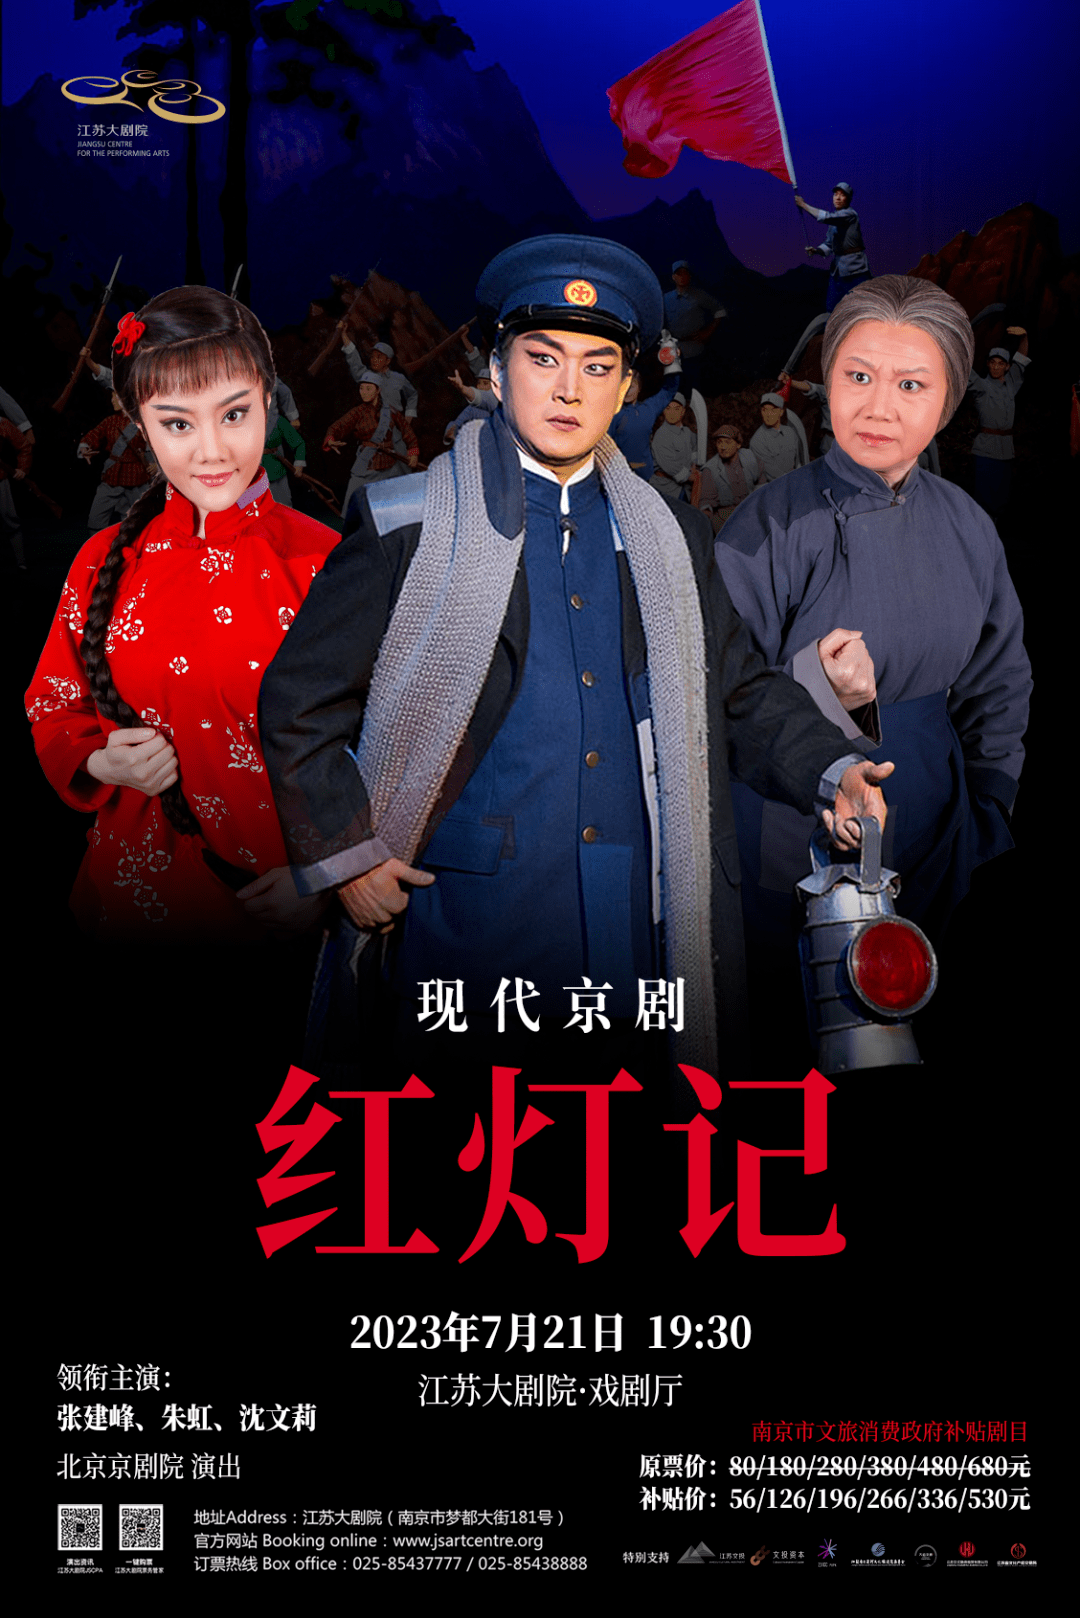 国粹京剧 上海京剧院3月5日6日红色经典《智取威虎山》《沙家浜》上演